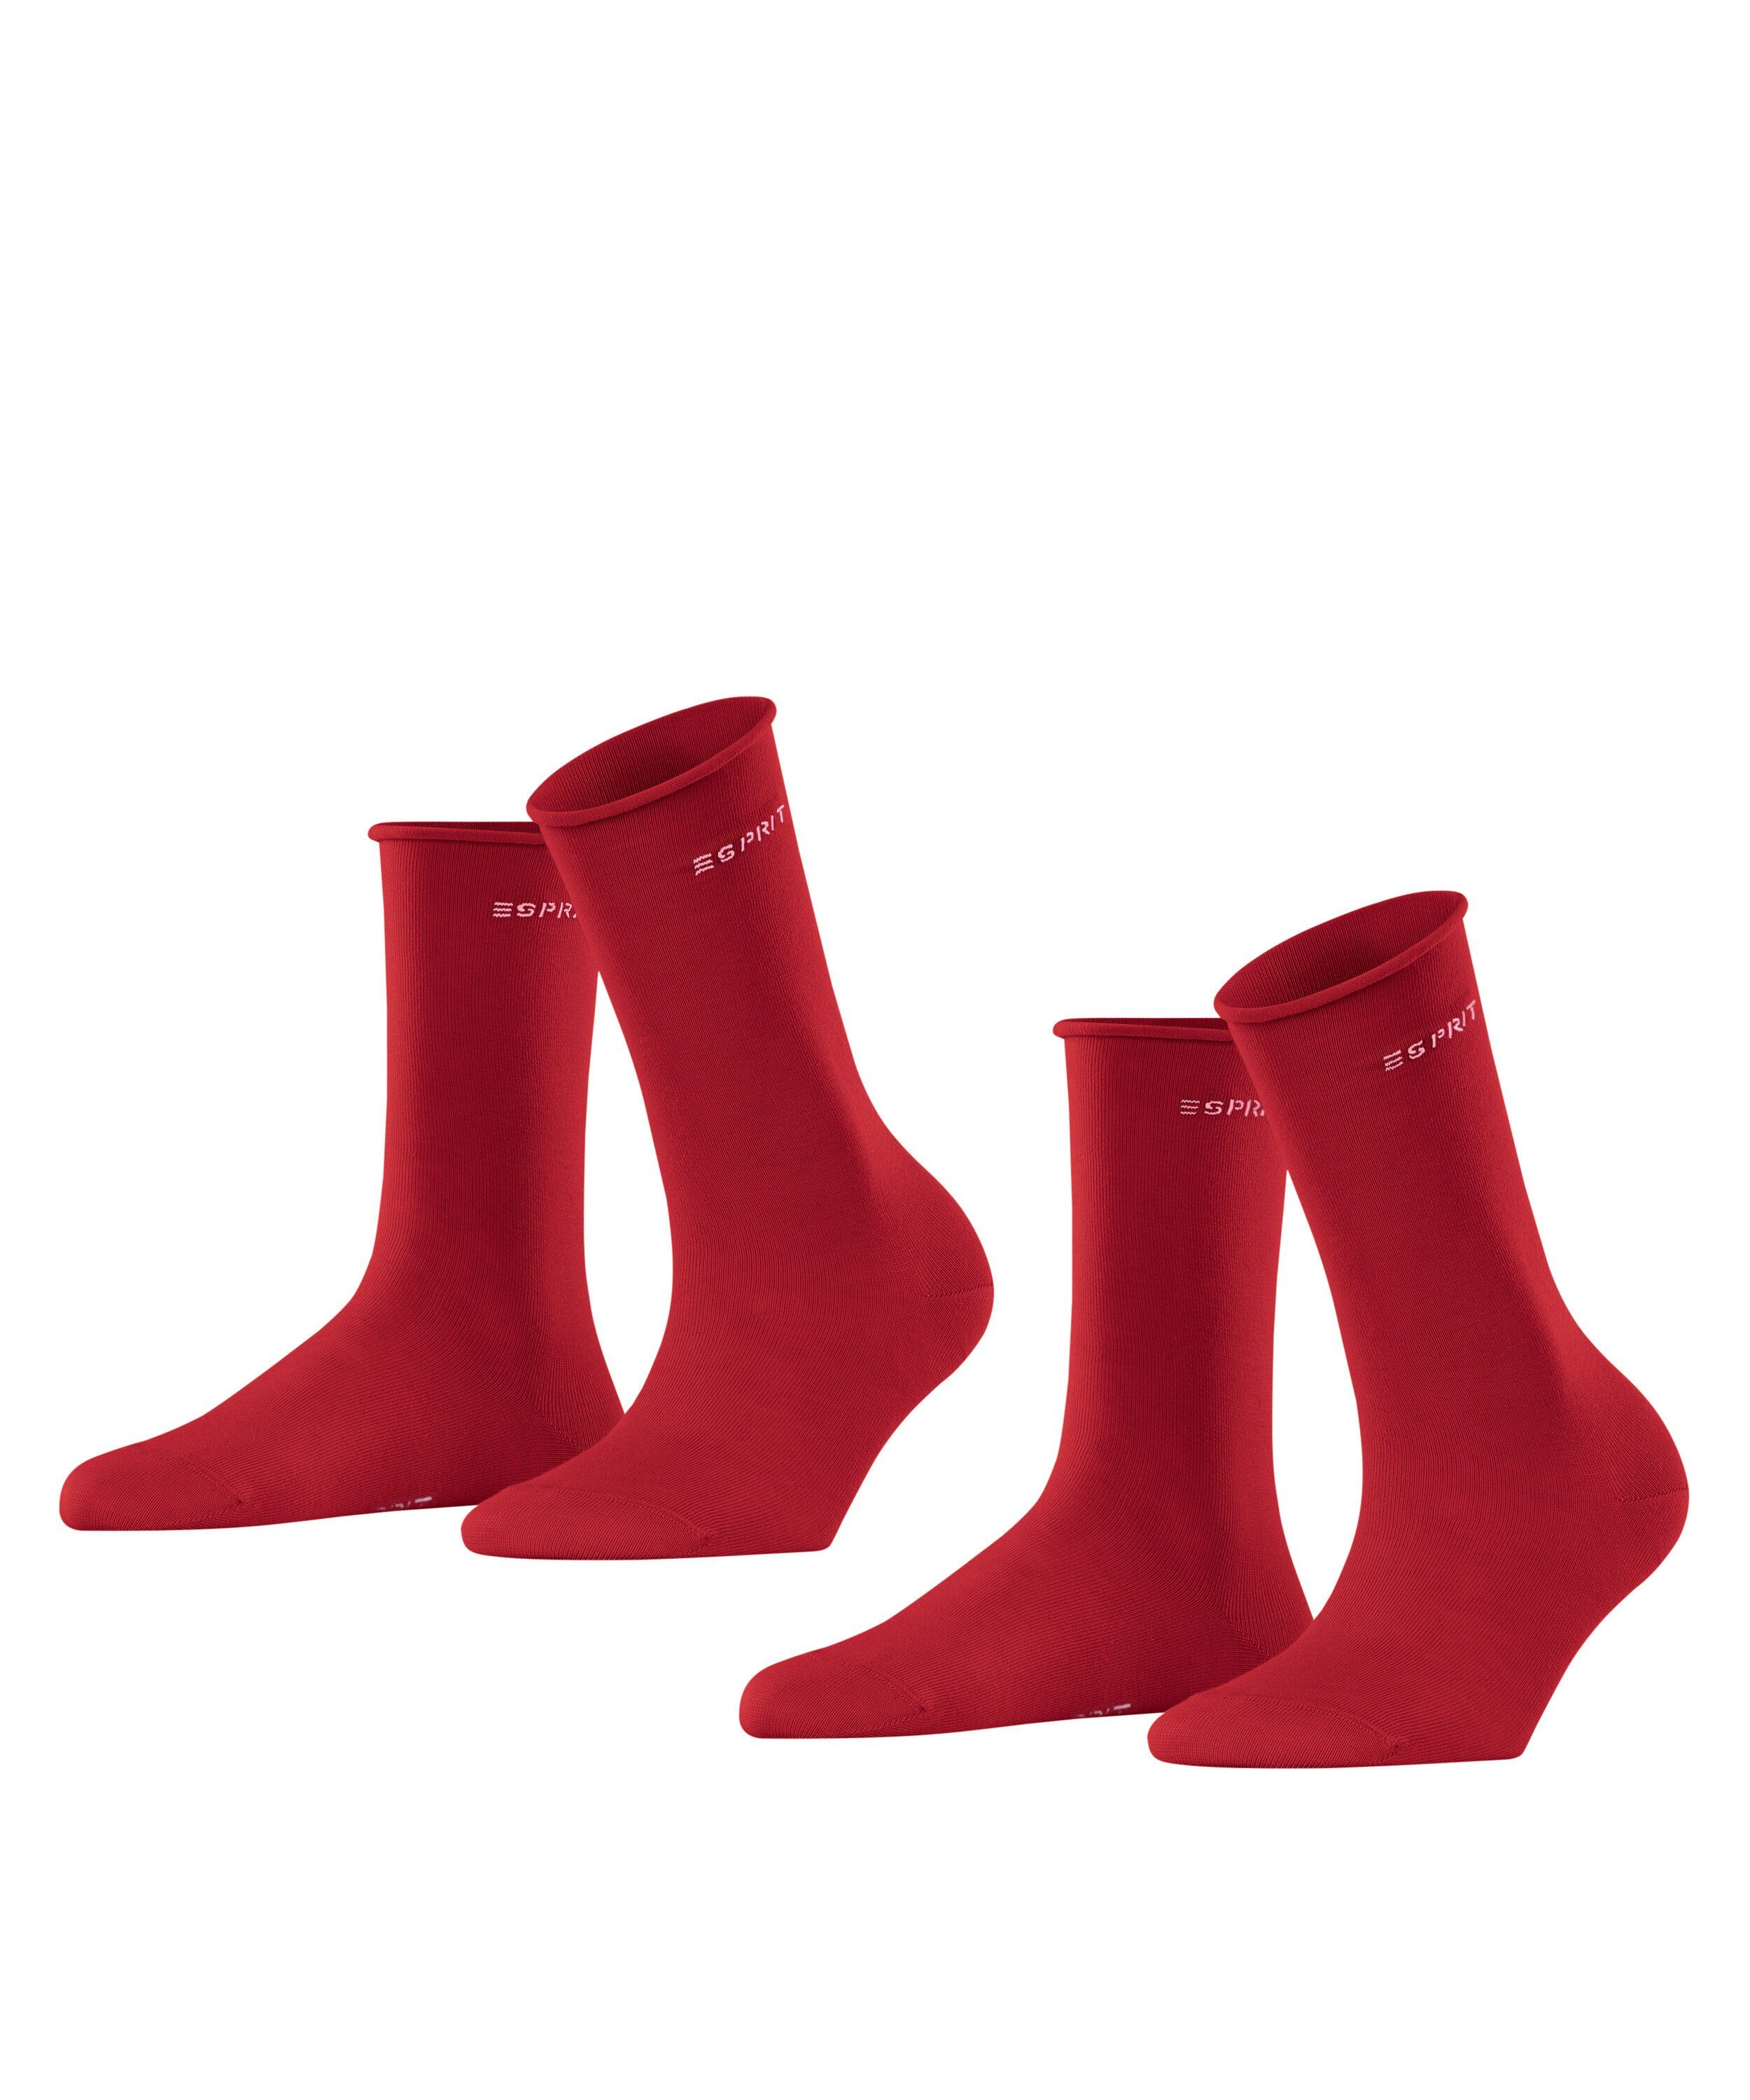 Esprit Socken Basic (8074) pepper red (2-Paar) 2-Pack Pure